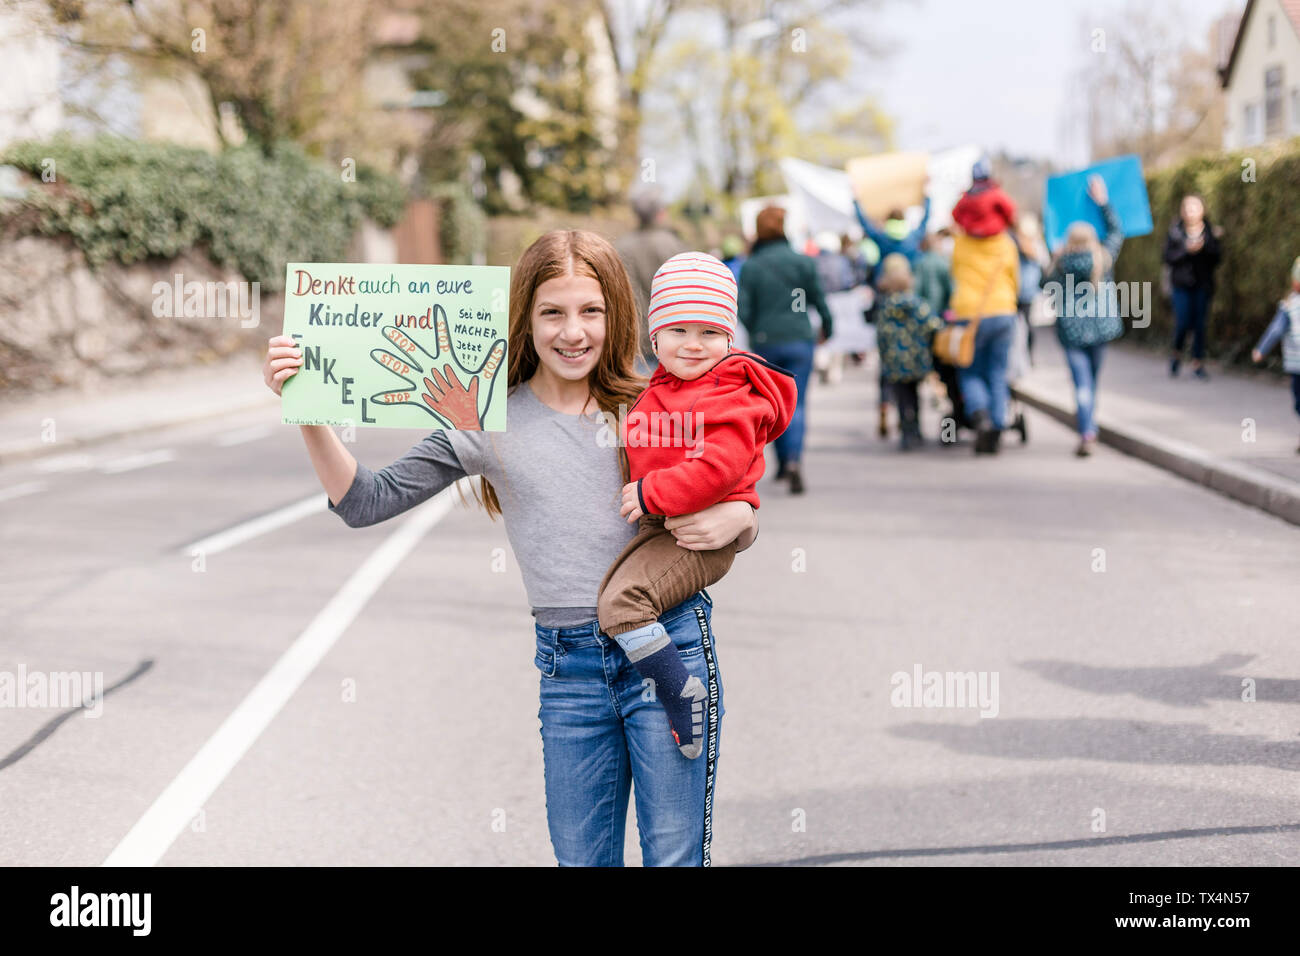 Mädchen mit Baby auf dem Arm hält ein Plakat auf einer Demonstration für den Umweltschutz Stockfoto